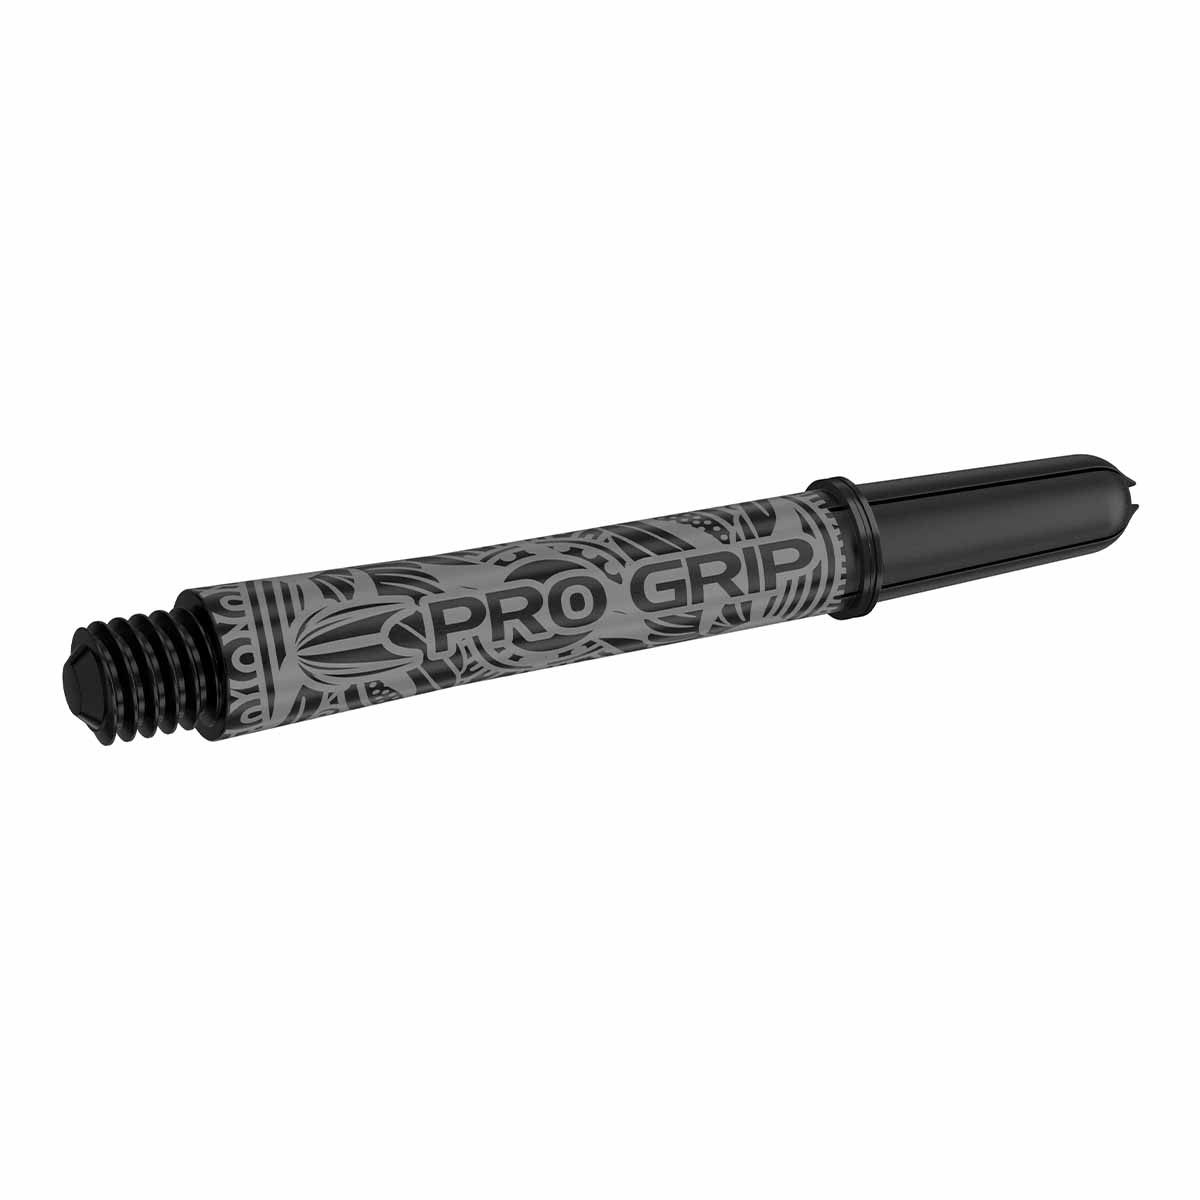 Target INK Pro Grip Shaft Black/Schwarz (versch. L?ngen) Intermediate 41 mm von TARGET